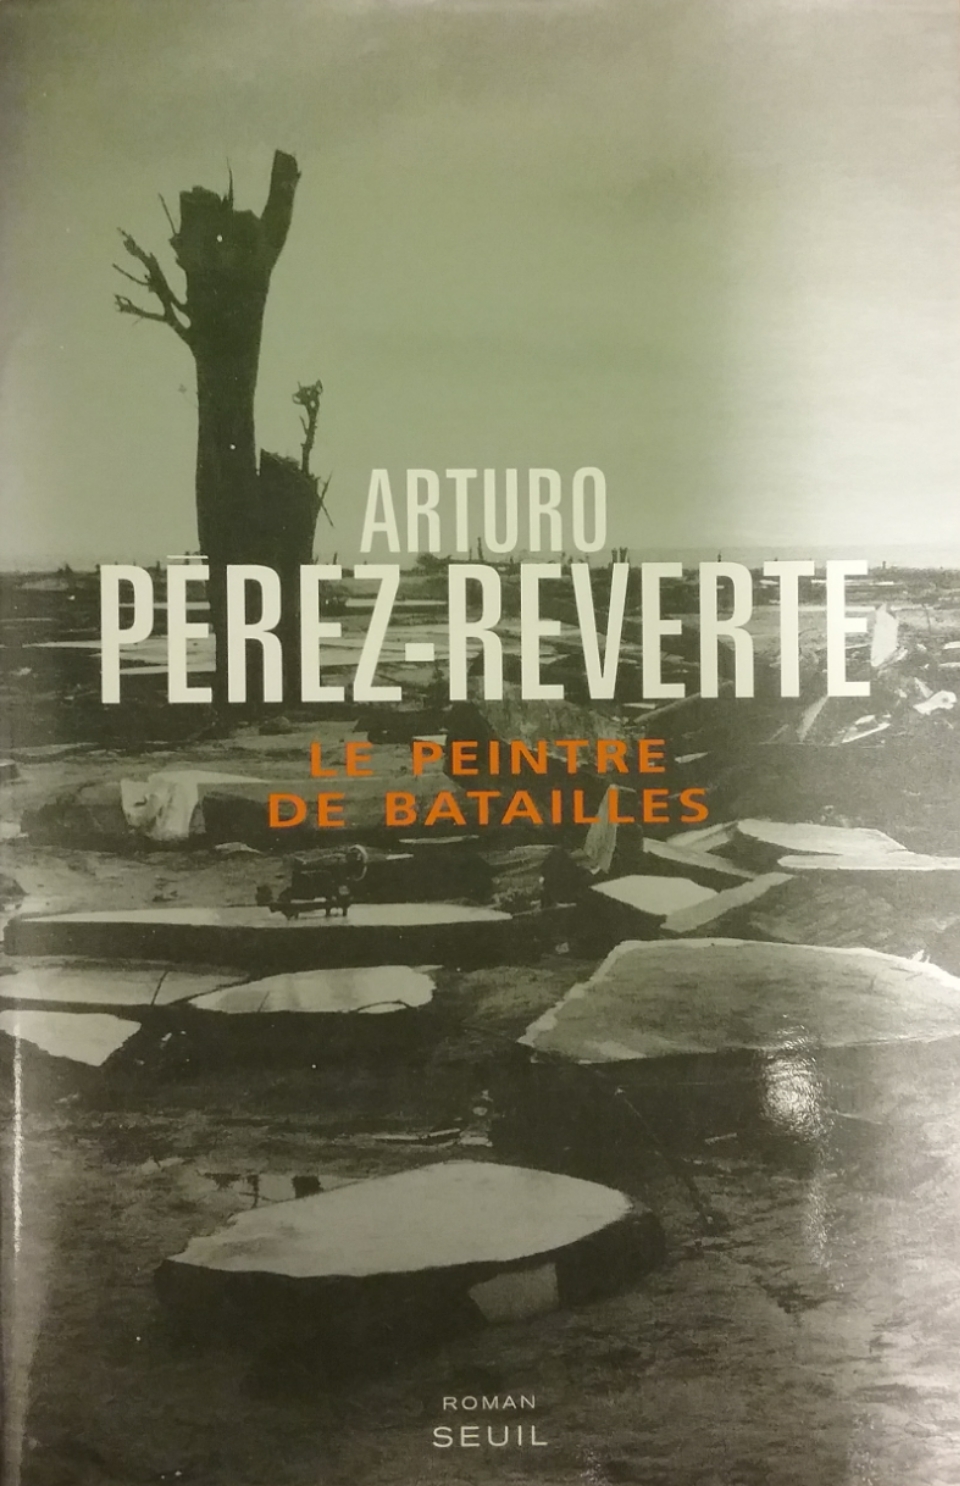 Le peintre de batailles Arturo Pérez-Reverte